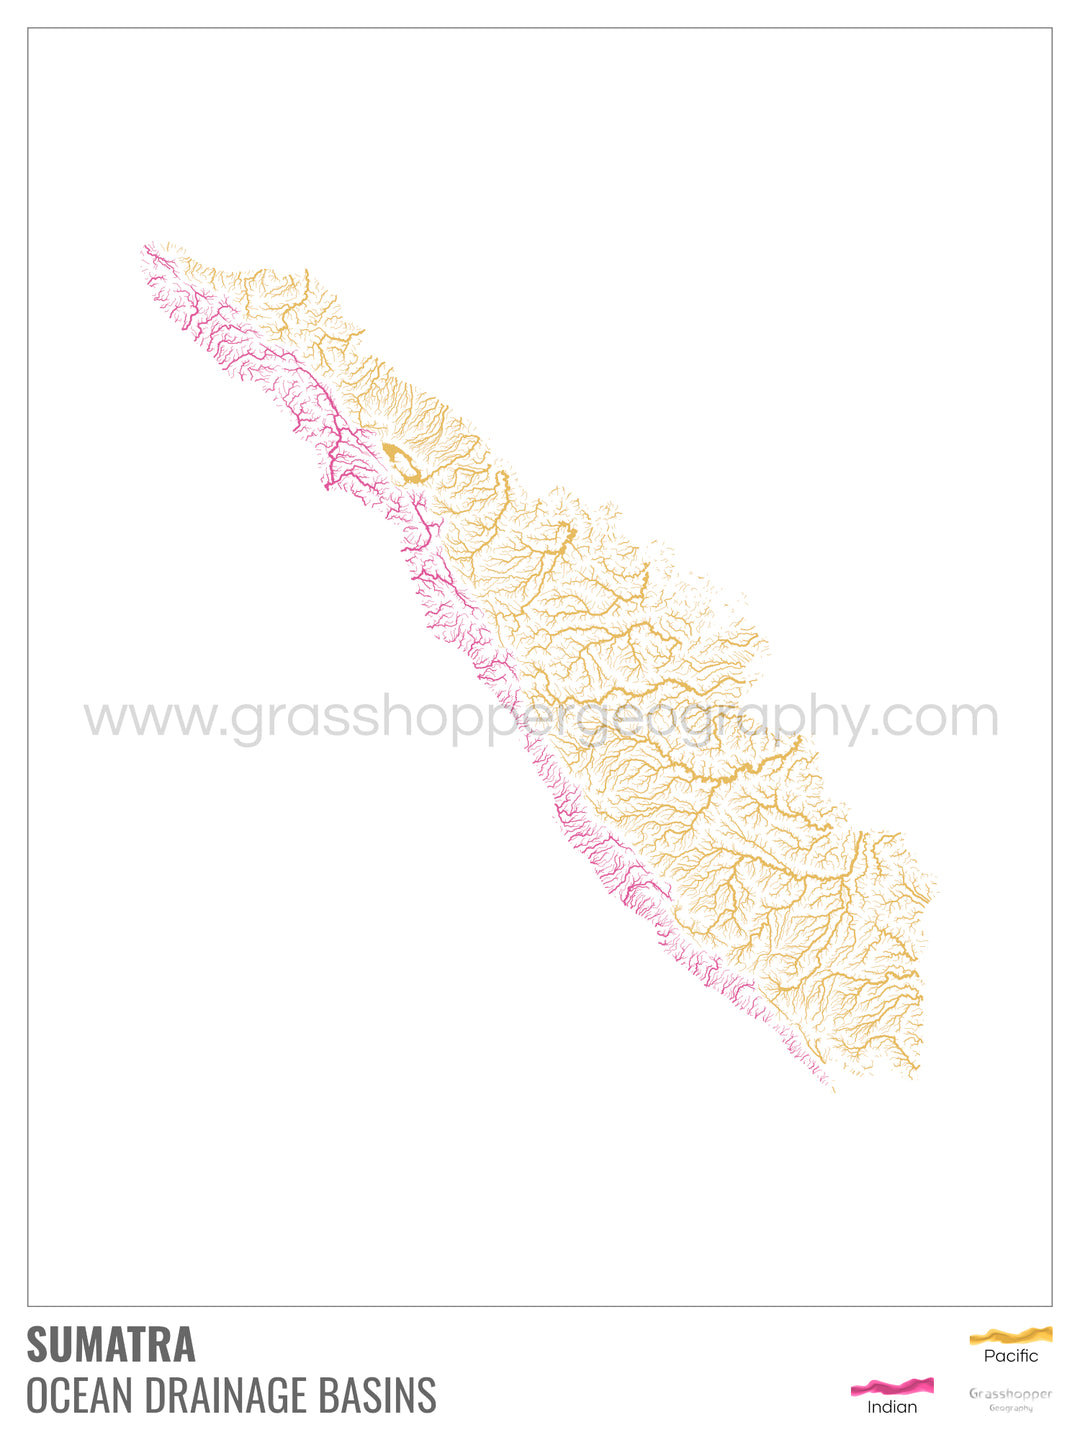 Sumatra - Carte du bassin versant océanique, blanche avec légende v1 - Tirage d'art avec cintre